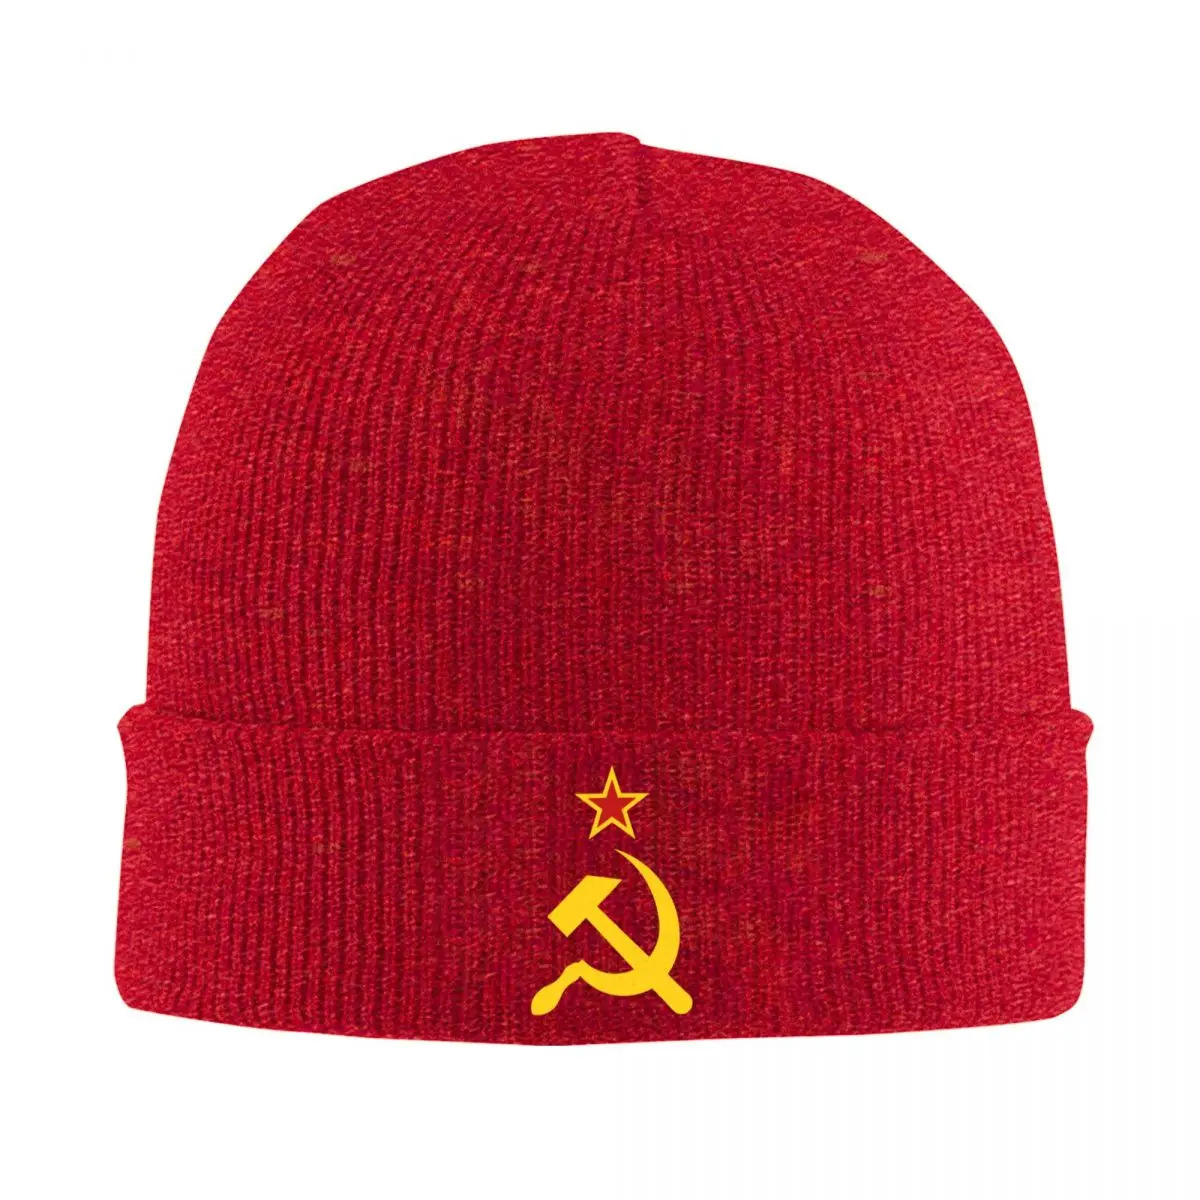 

Russian Soviet Flag Bonnet Hats Hip Hop Knitting Hat For Women Men Winter Warm CCCP USSR Hammer And Sickle Skullies Beanies Caps